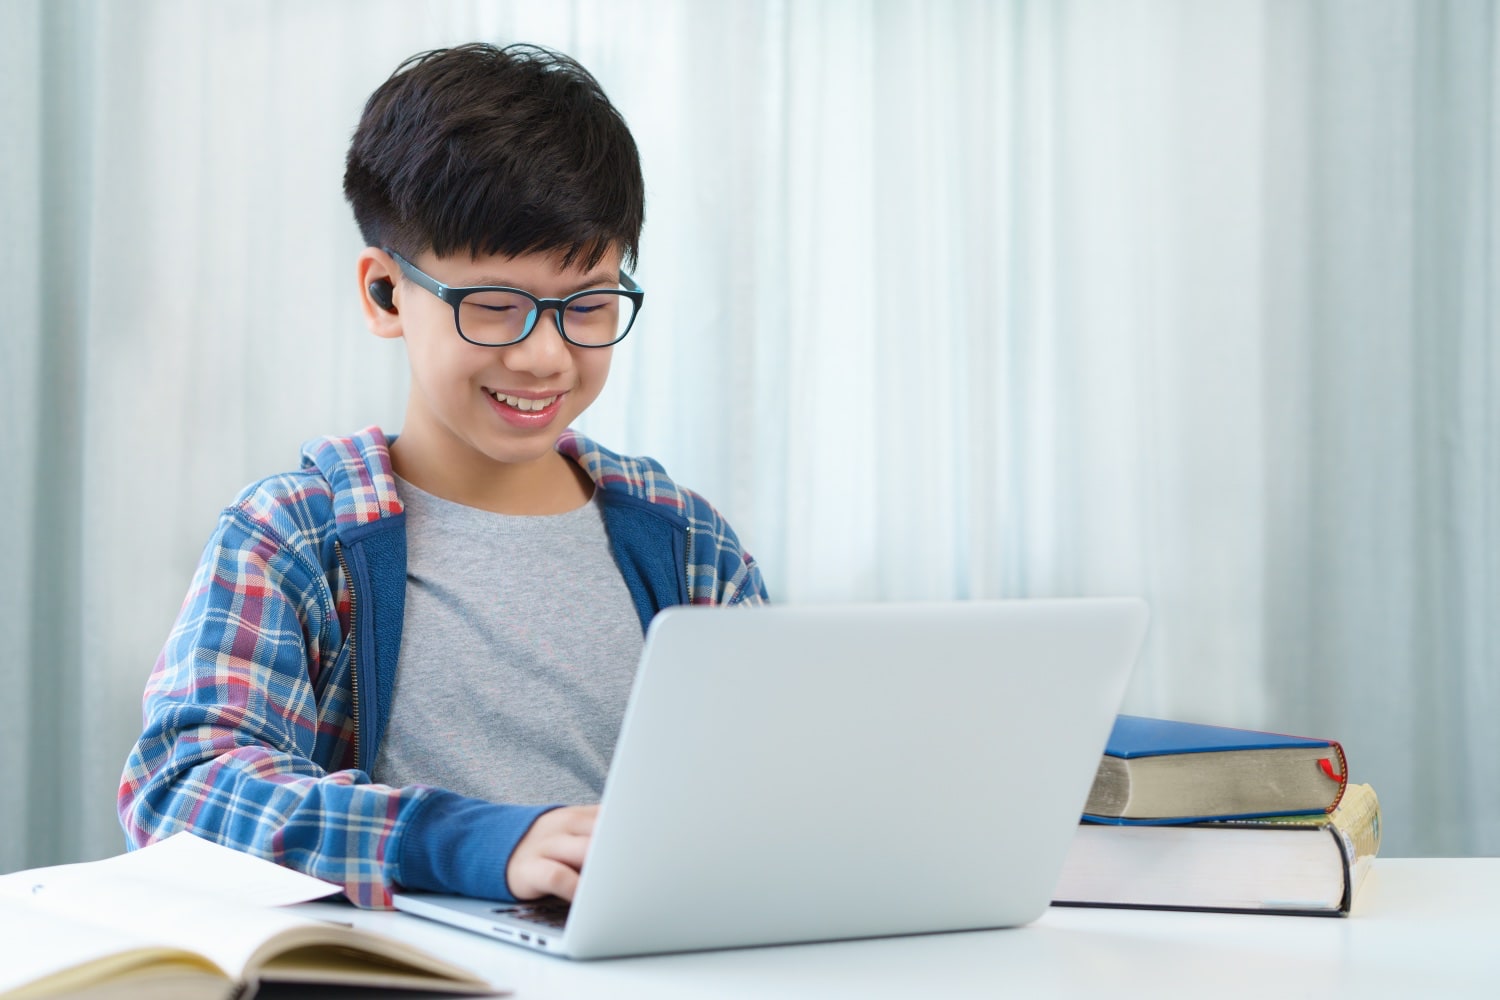 Asiatischer Junge mit Brille arbeitet am Notebook.